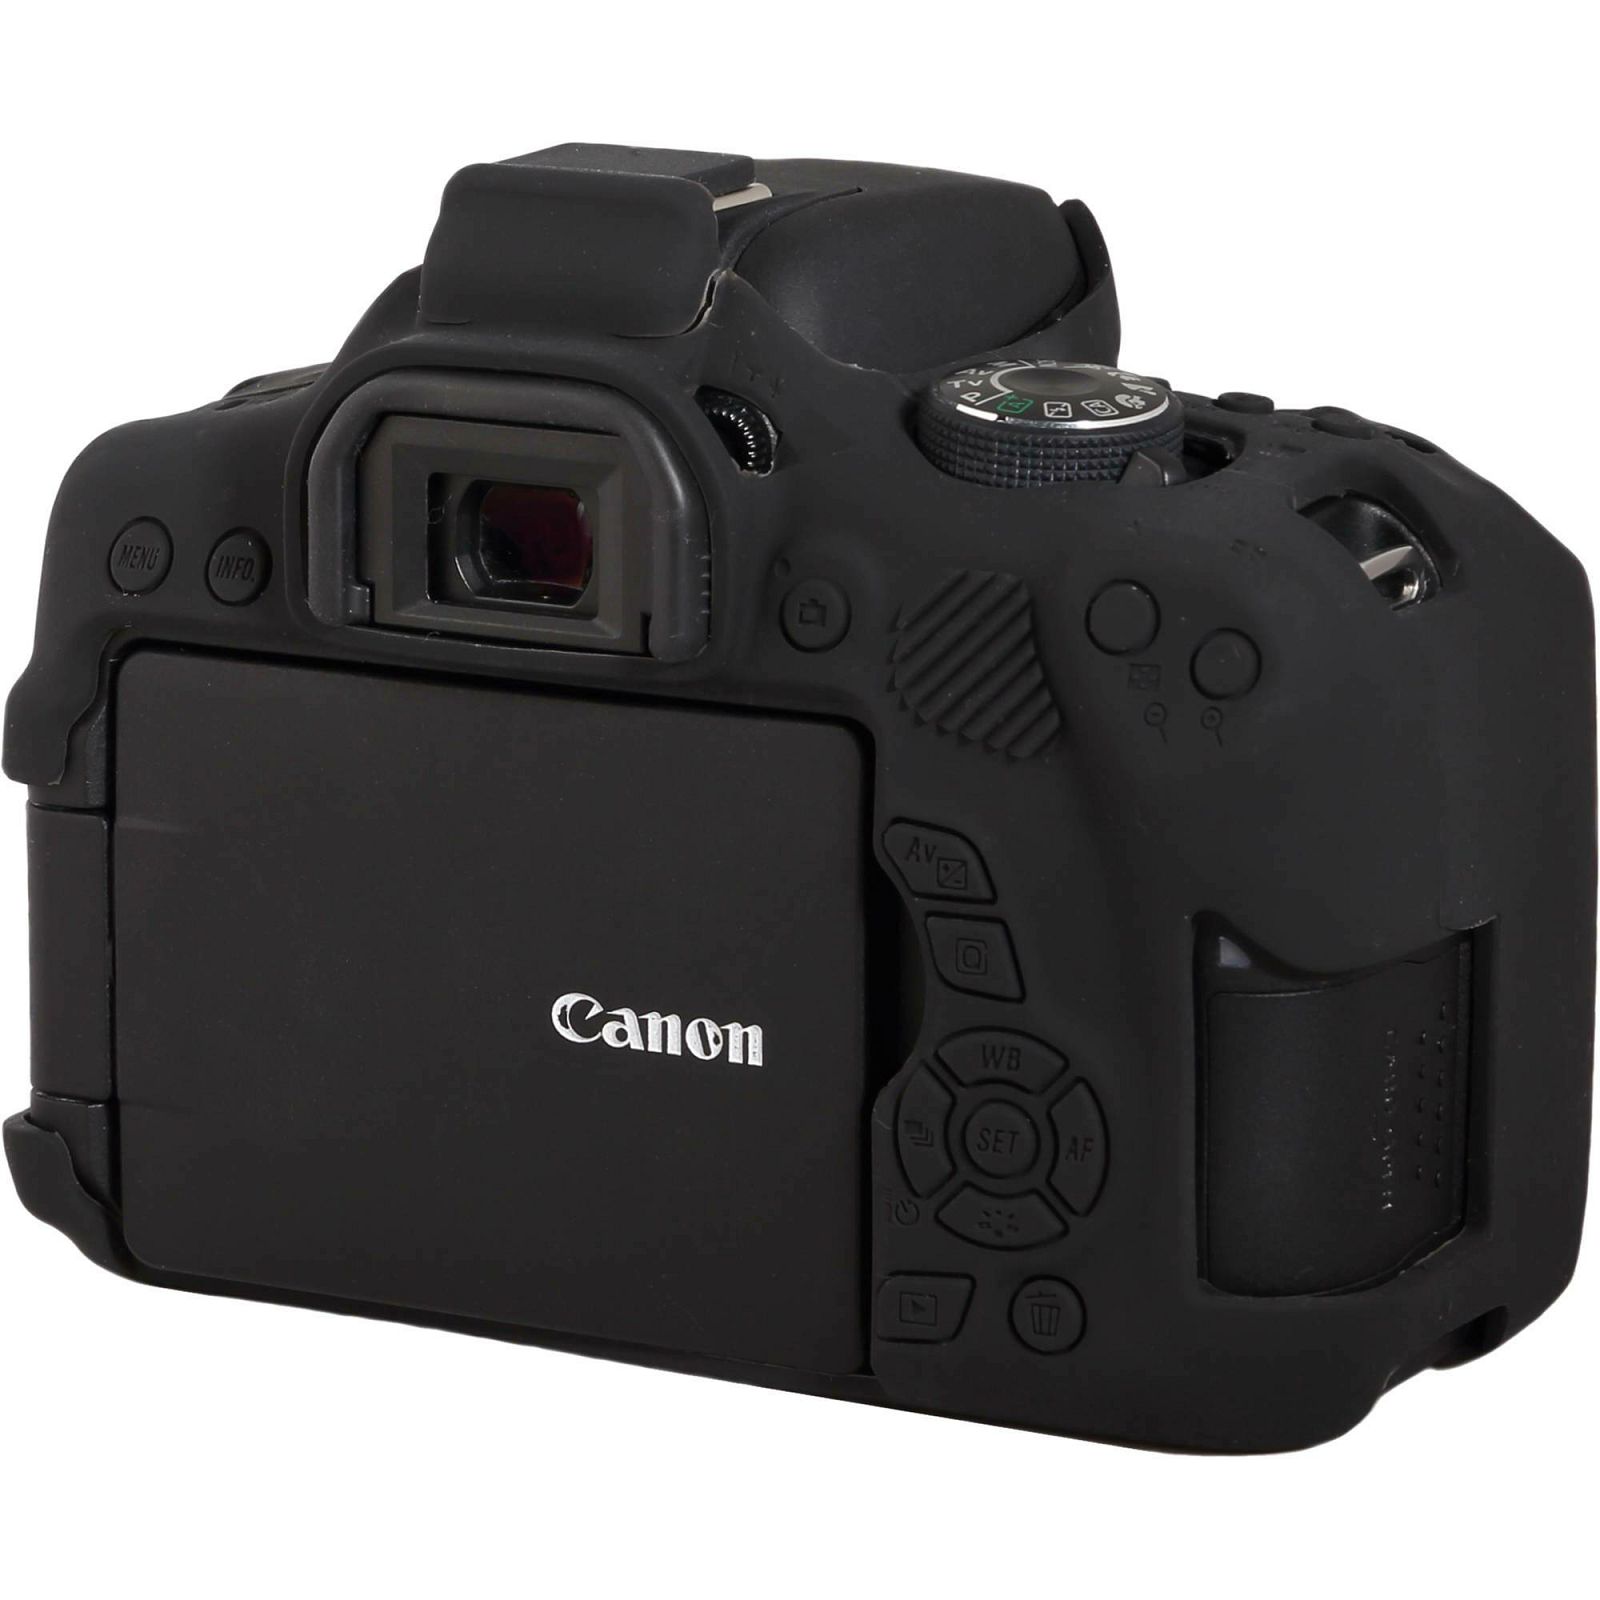 Discovered easyCover za Canon EOS 750D Black crno gumeno zaštitno kućište camera case (ECC750DB)